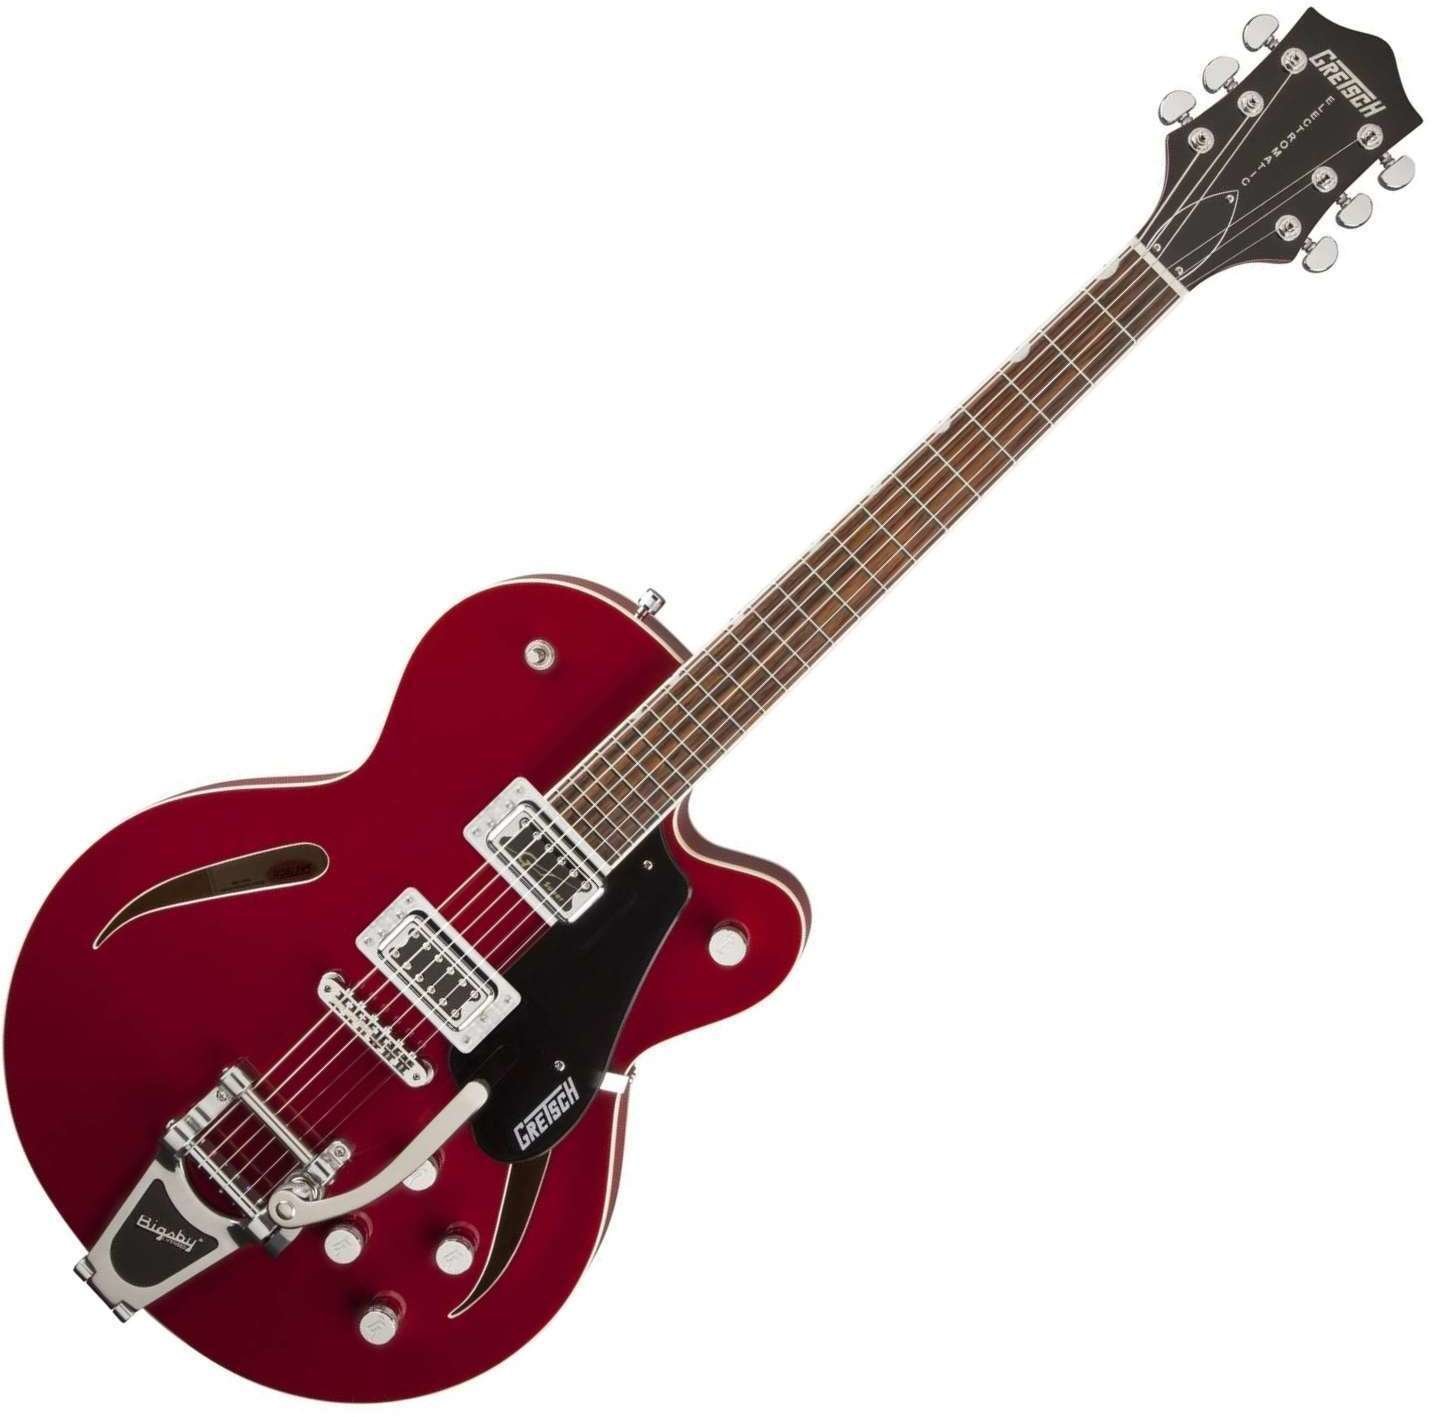 Halvakustisk guitar Gretsch G5620T-CB Rosa Red